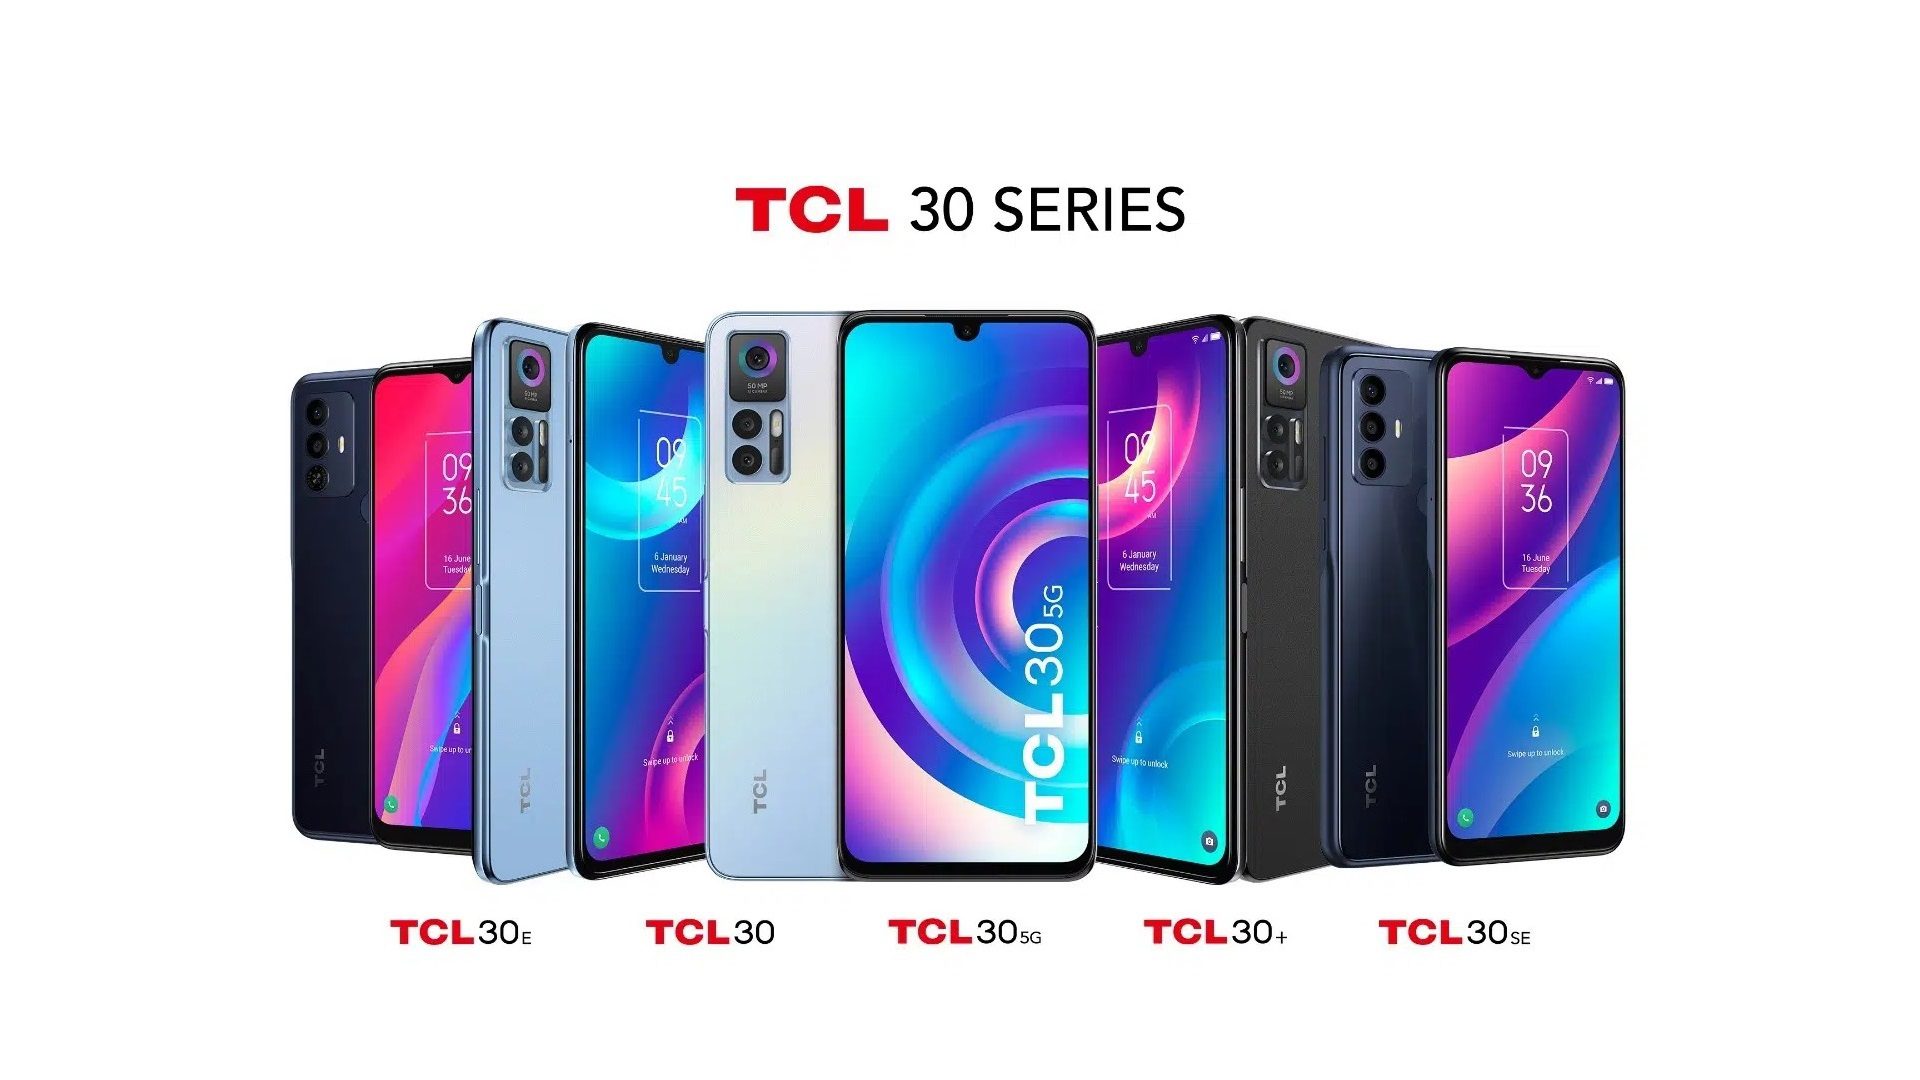 Gli smartphone della nuova serie TCL 30